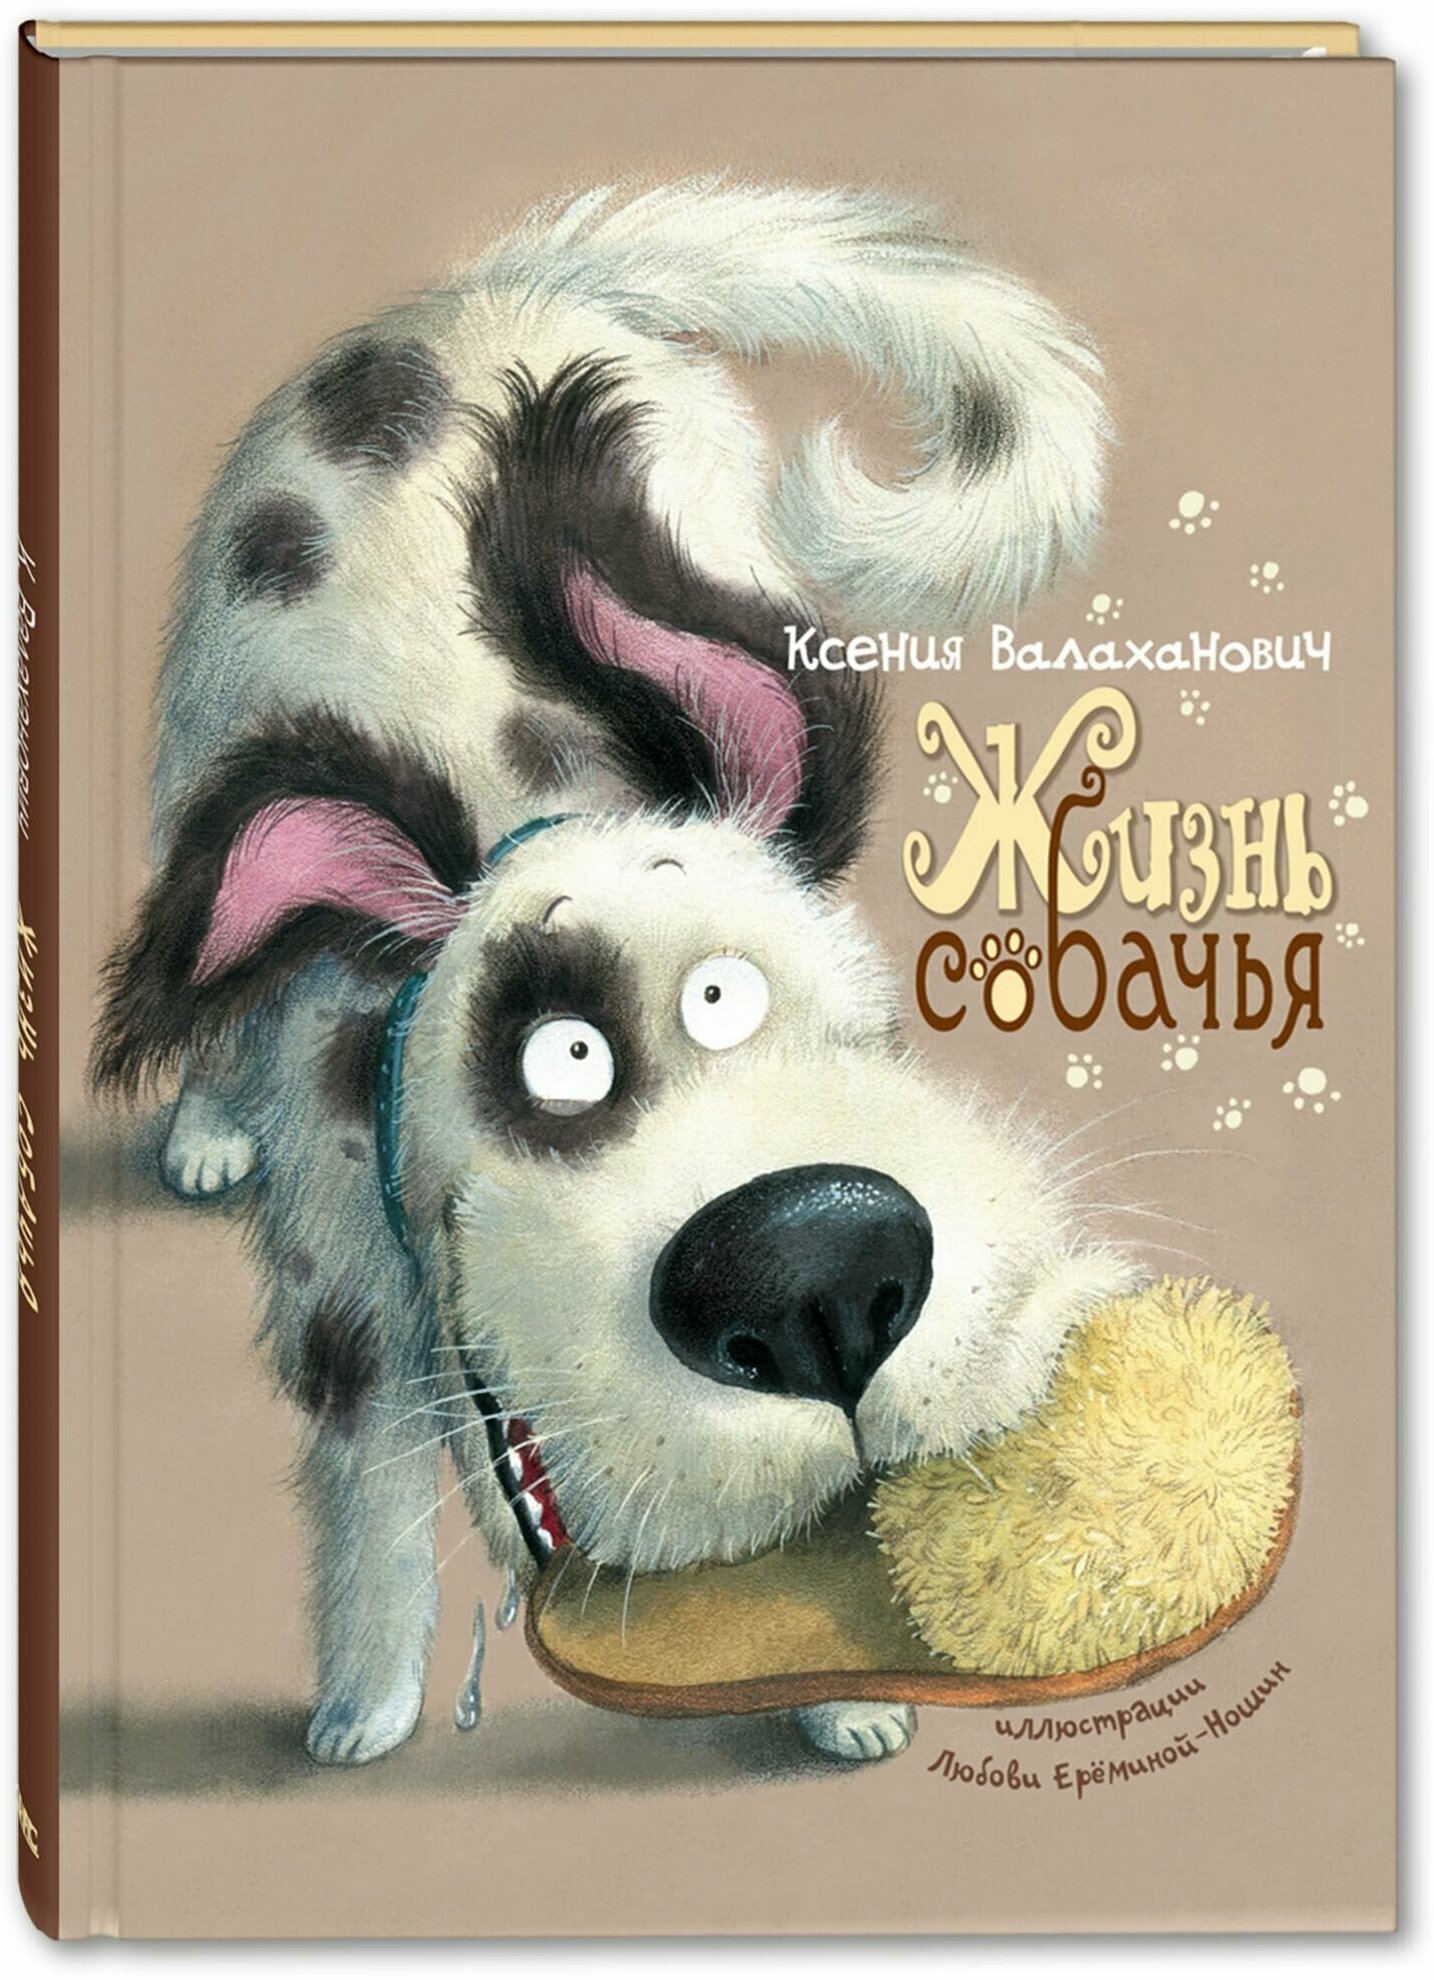 Книга Жизнь собачья